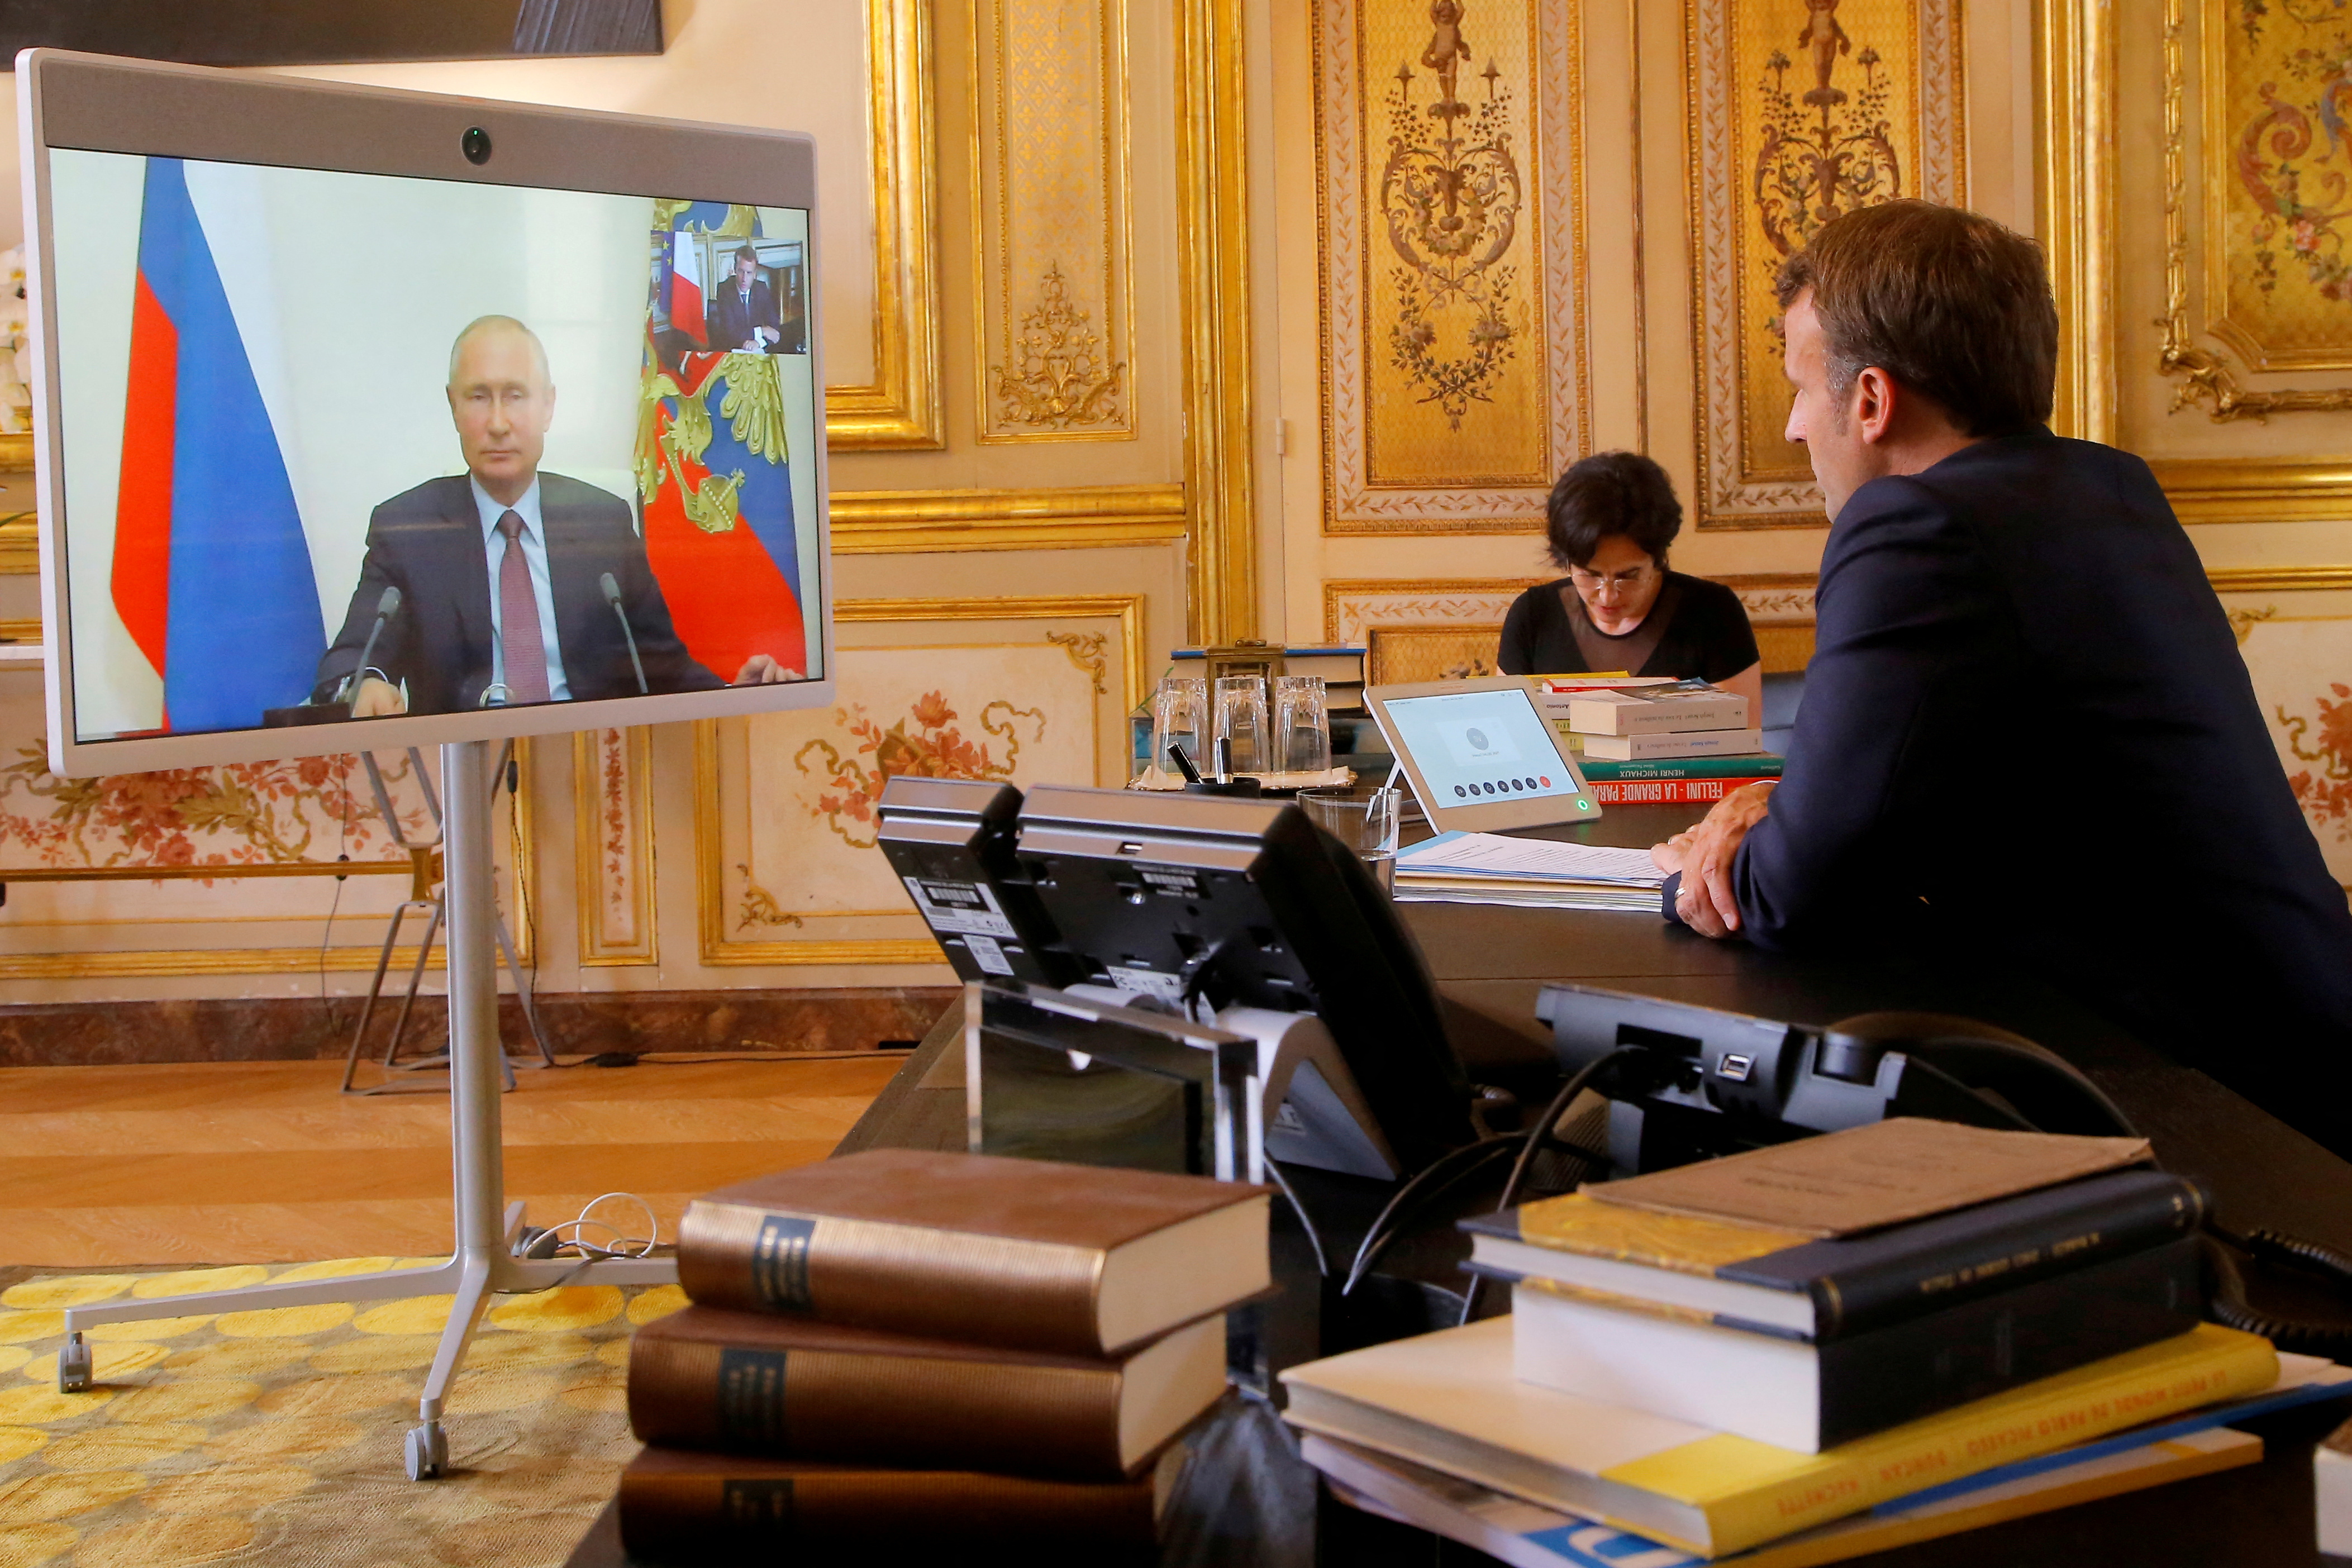 Los detalles de la llamada confidencial días antes de la operación militar de Moscú en Ucrania fueron revelados por la emisora France 2 en un documental 